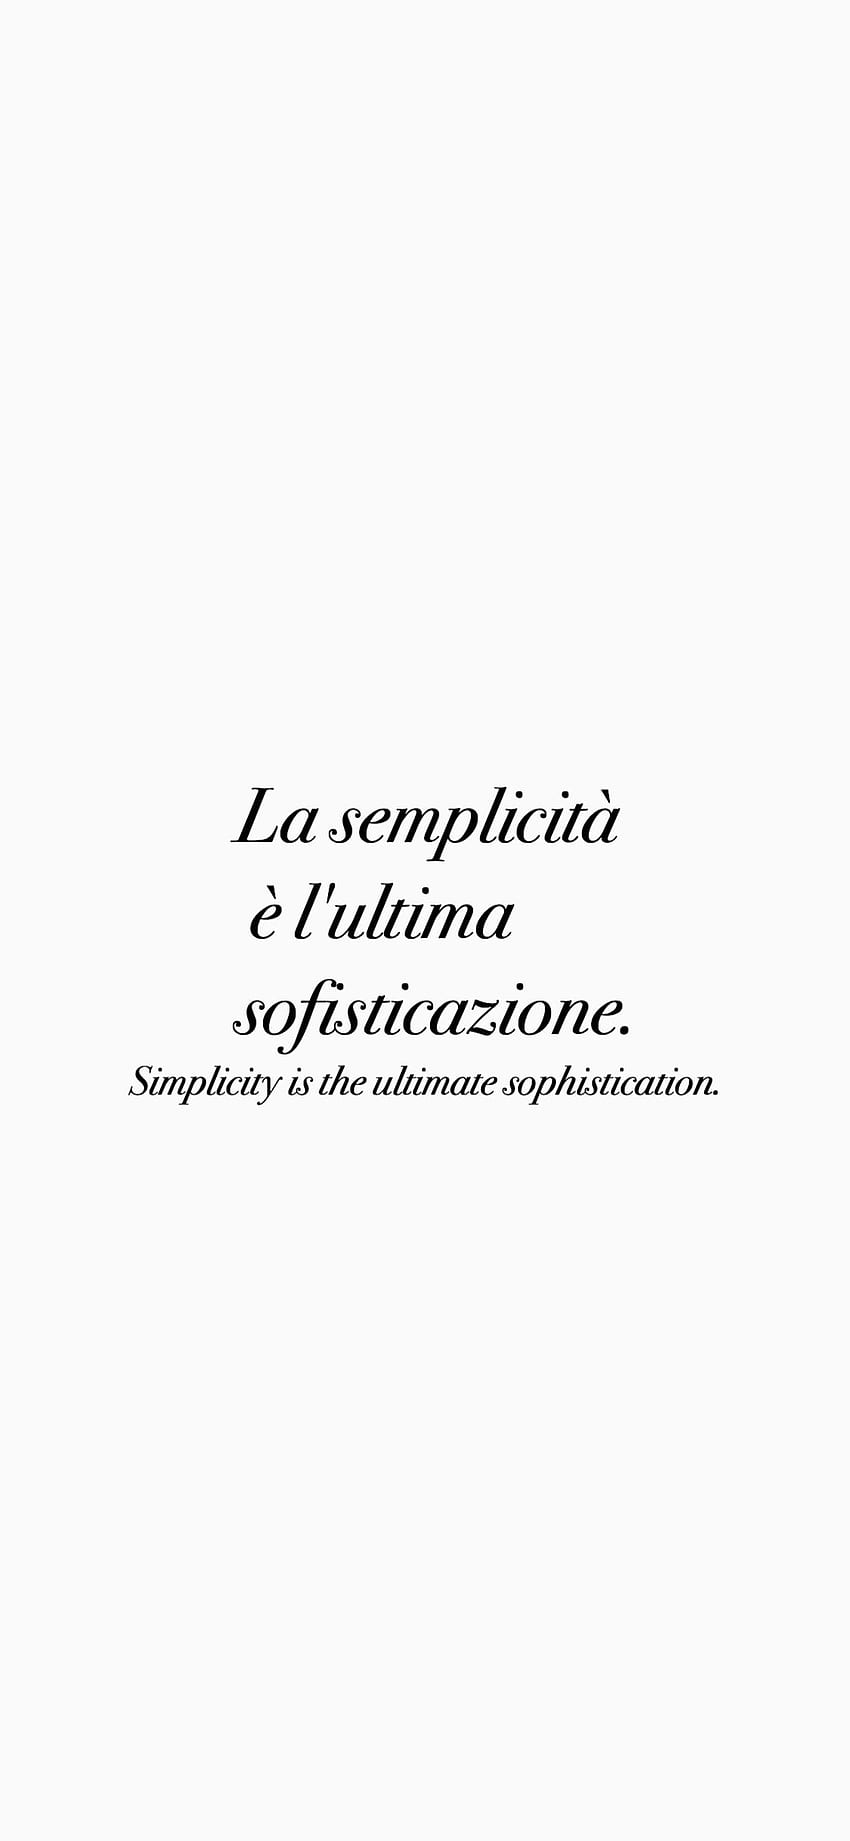 ITALIAN QUOTES IPHONE QUOTES ❤️ 「洗練とシンプルさ」 「シンプルさは究極の洗練です。 イタリア語の名言, シンプルな名言, 機知に富んだ名言 HD電話の壁紙